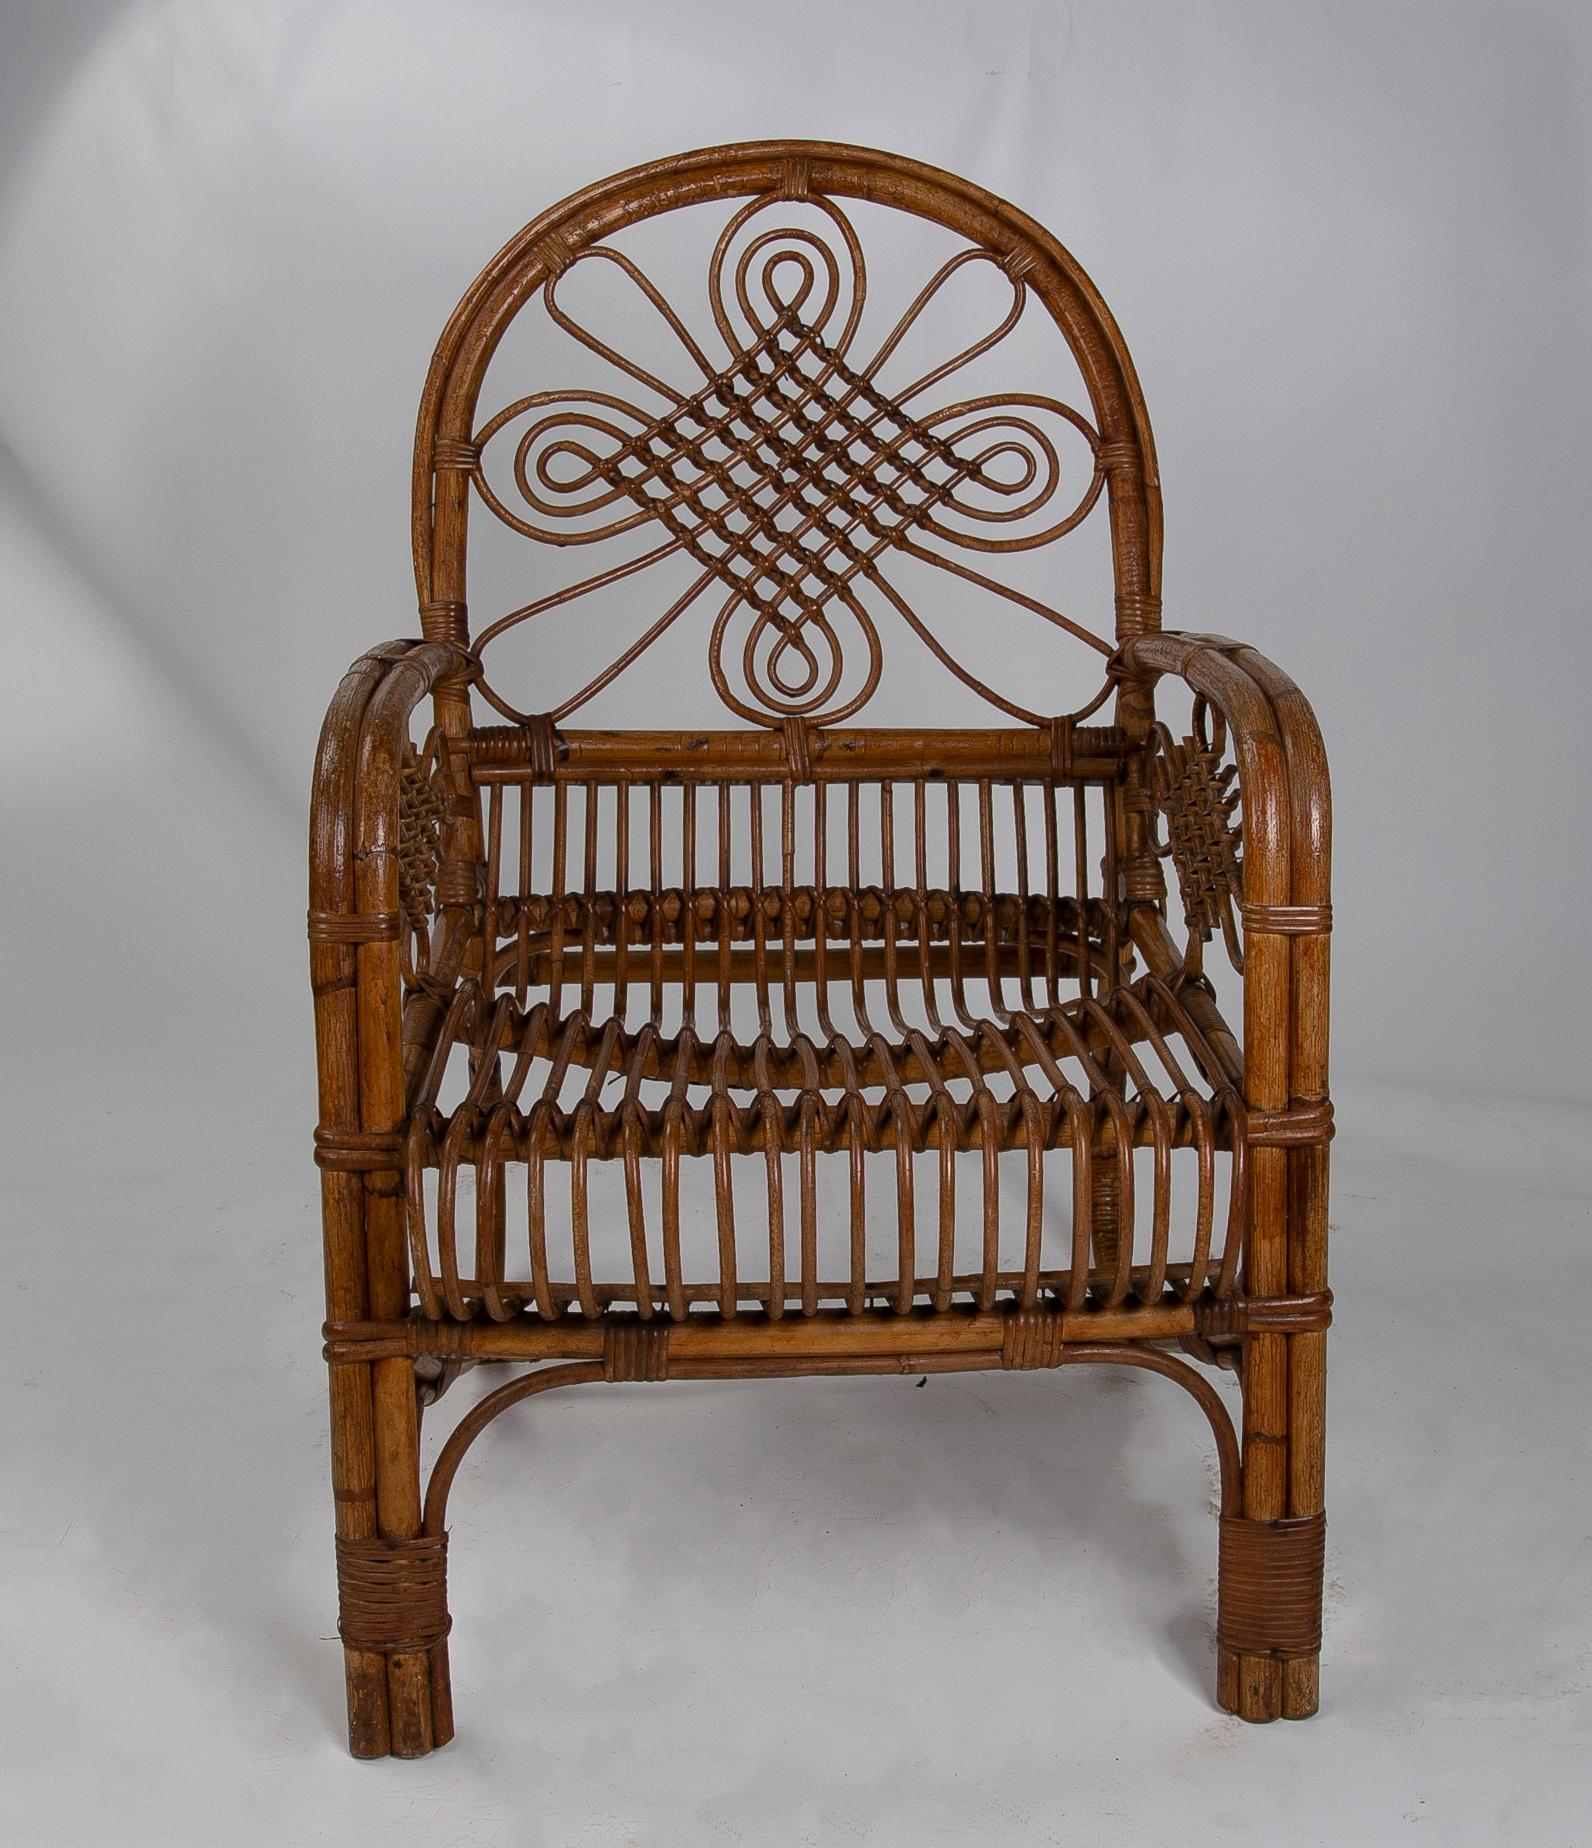 Runder Tisch und Stuhl aus Bambus und Korbgeflecht, 1980er Jahre 
Abmessungen des Stuhls: 90x55x65cm
Abmessungen des Tisches: 57x70cm